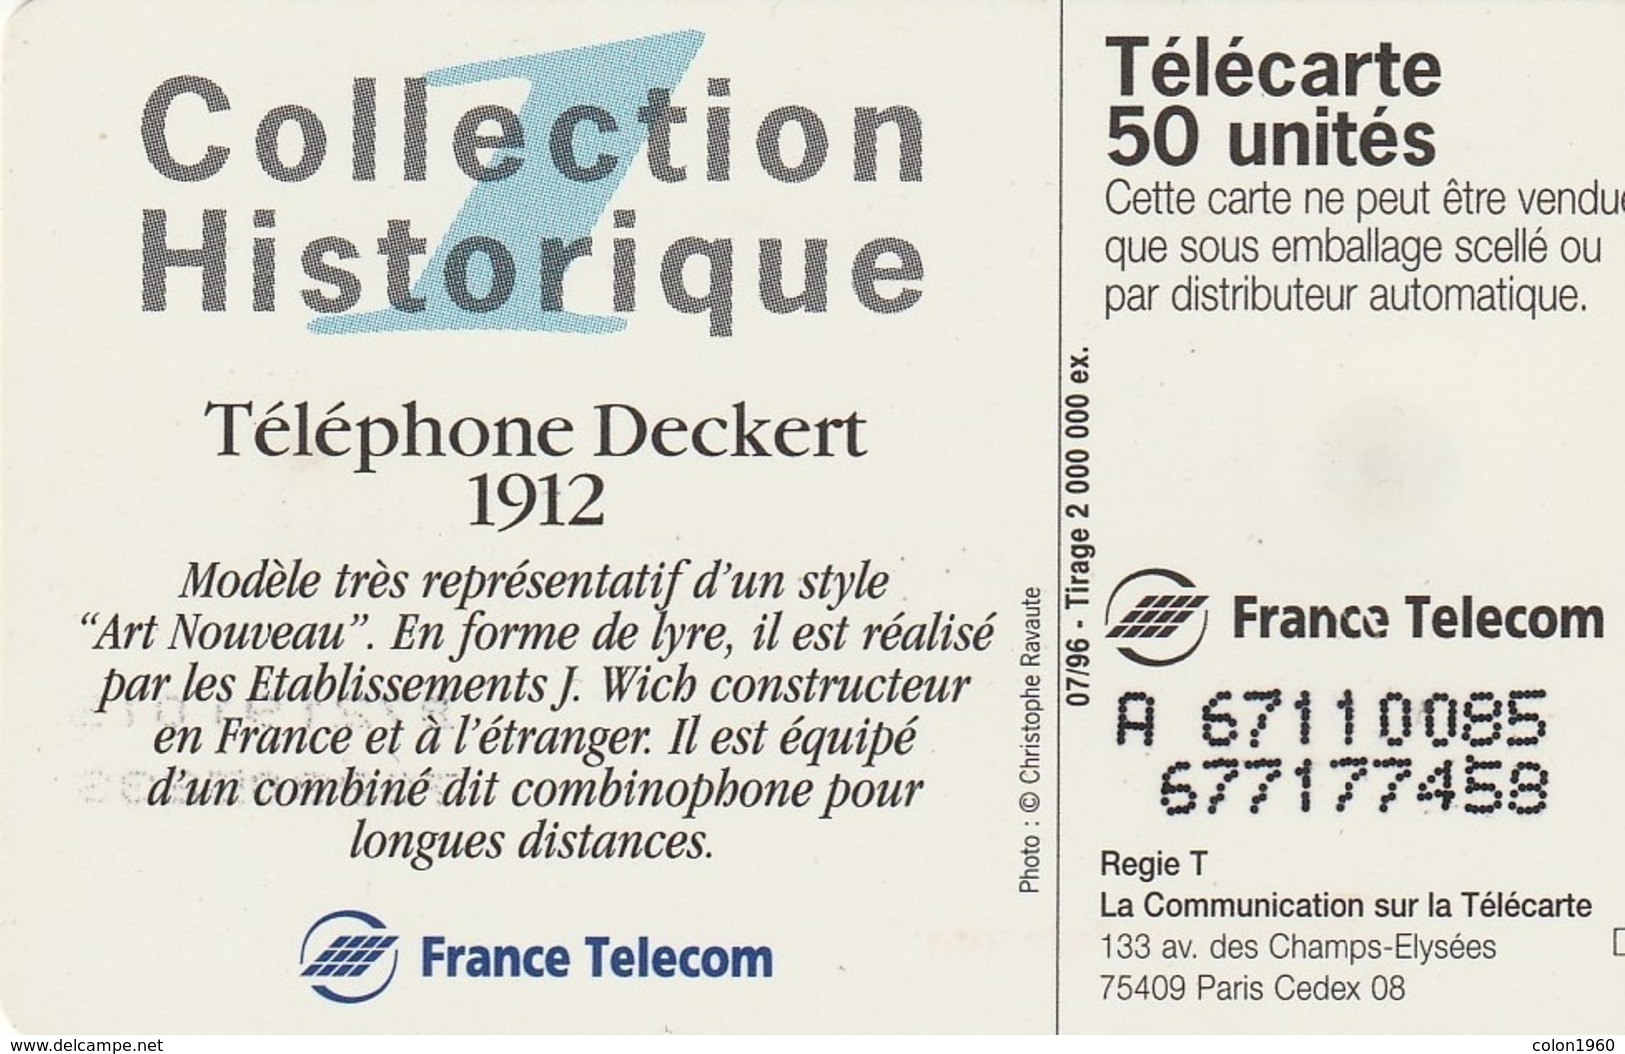 FRANCIA. Collection Historique N. 01 - Téléphone Deckert 1912. 50U. 07/96. 0677.1. (252). - 1996